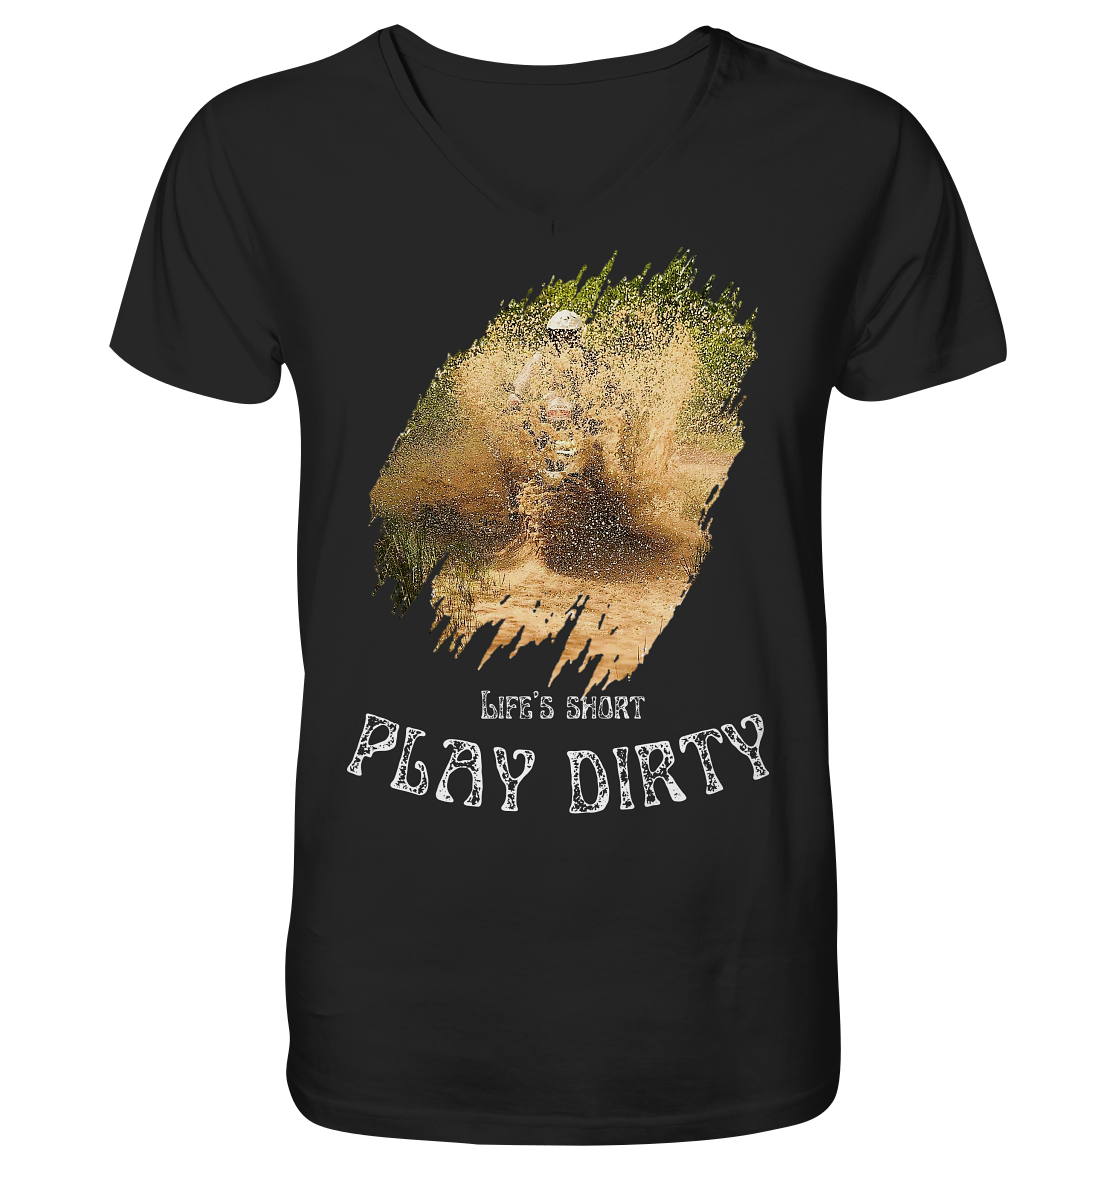 "Life's short - play dirty" 1 _ helles Design | Shirt mit V-Ausschnitt für Jürgen P.